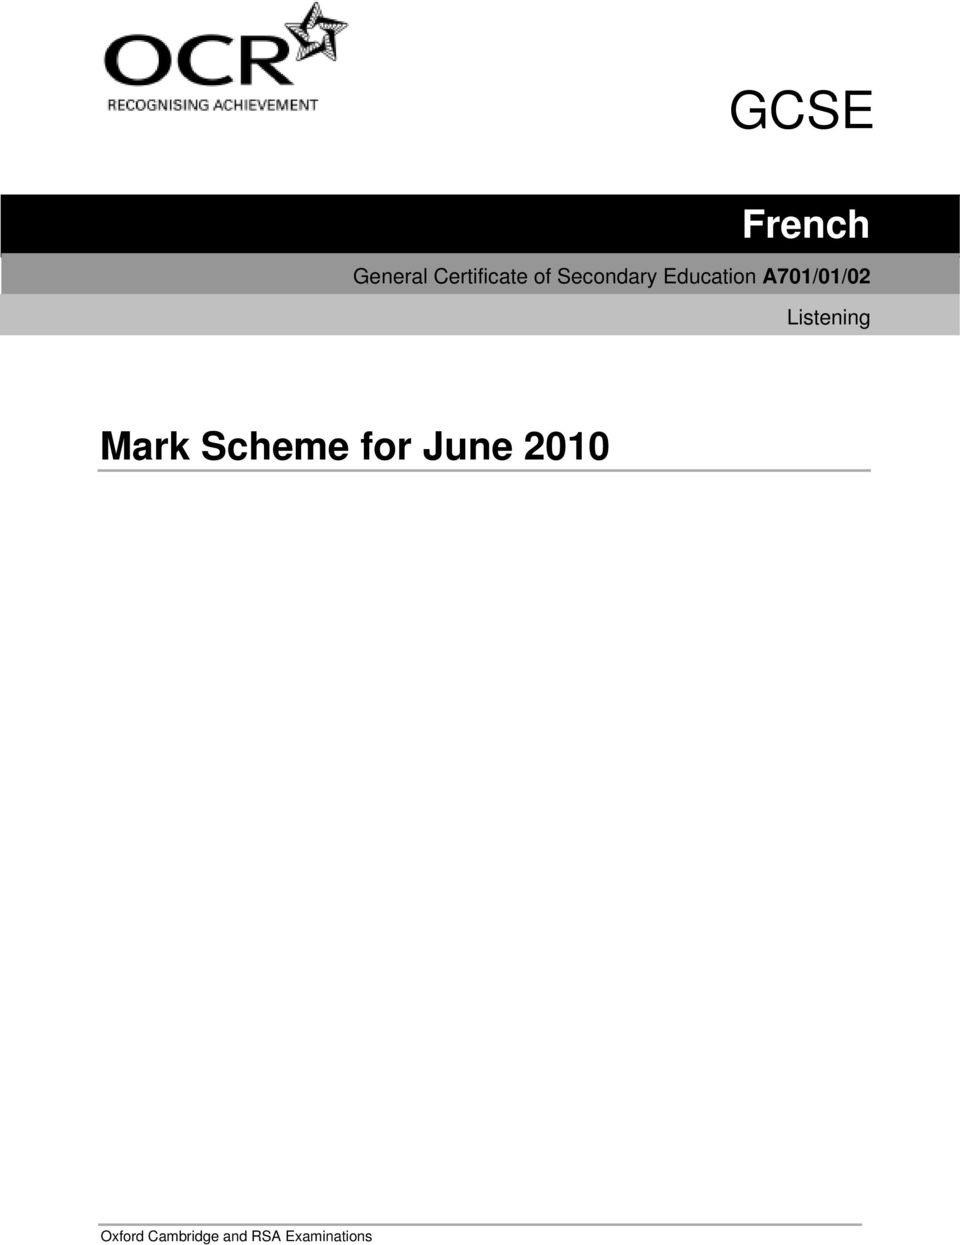 Listening Mark Scheme for June